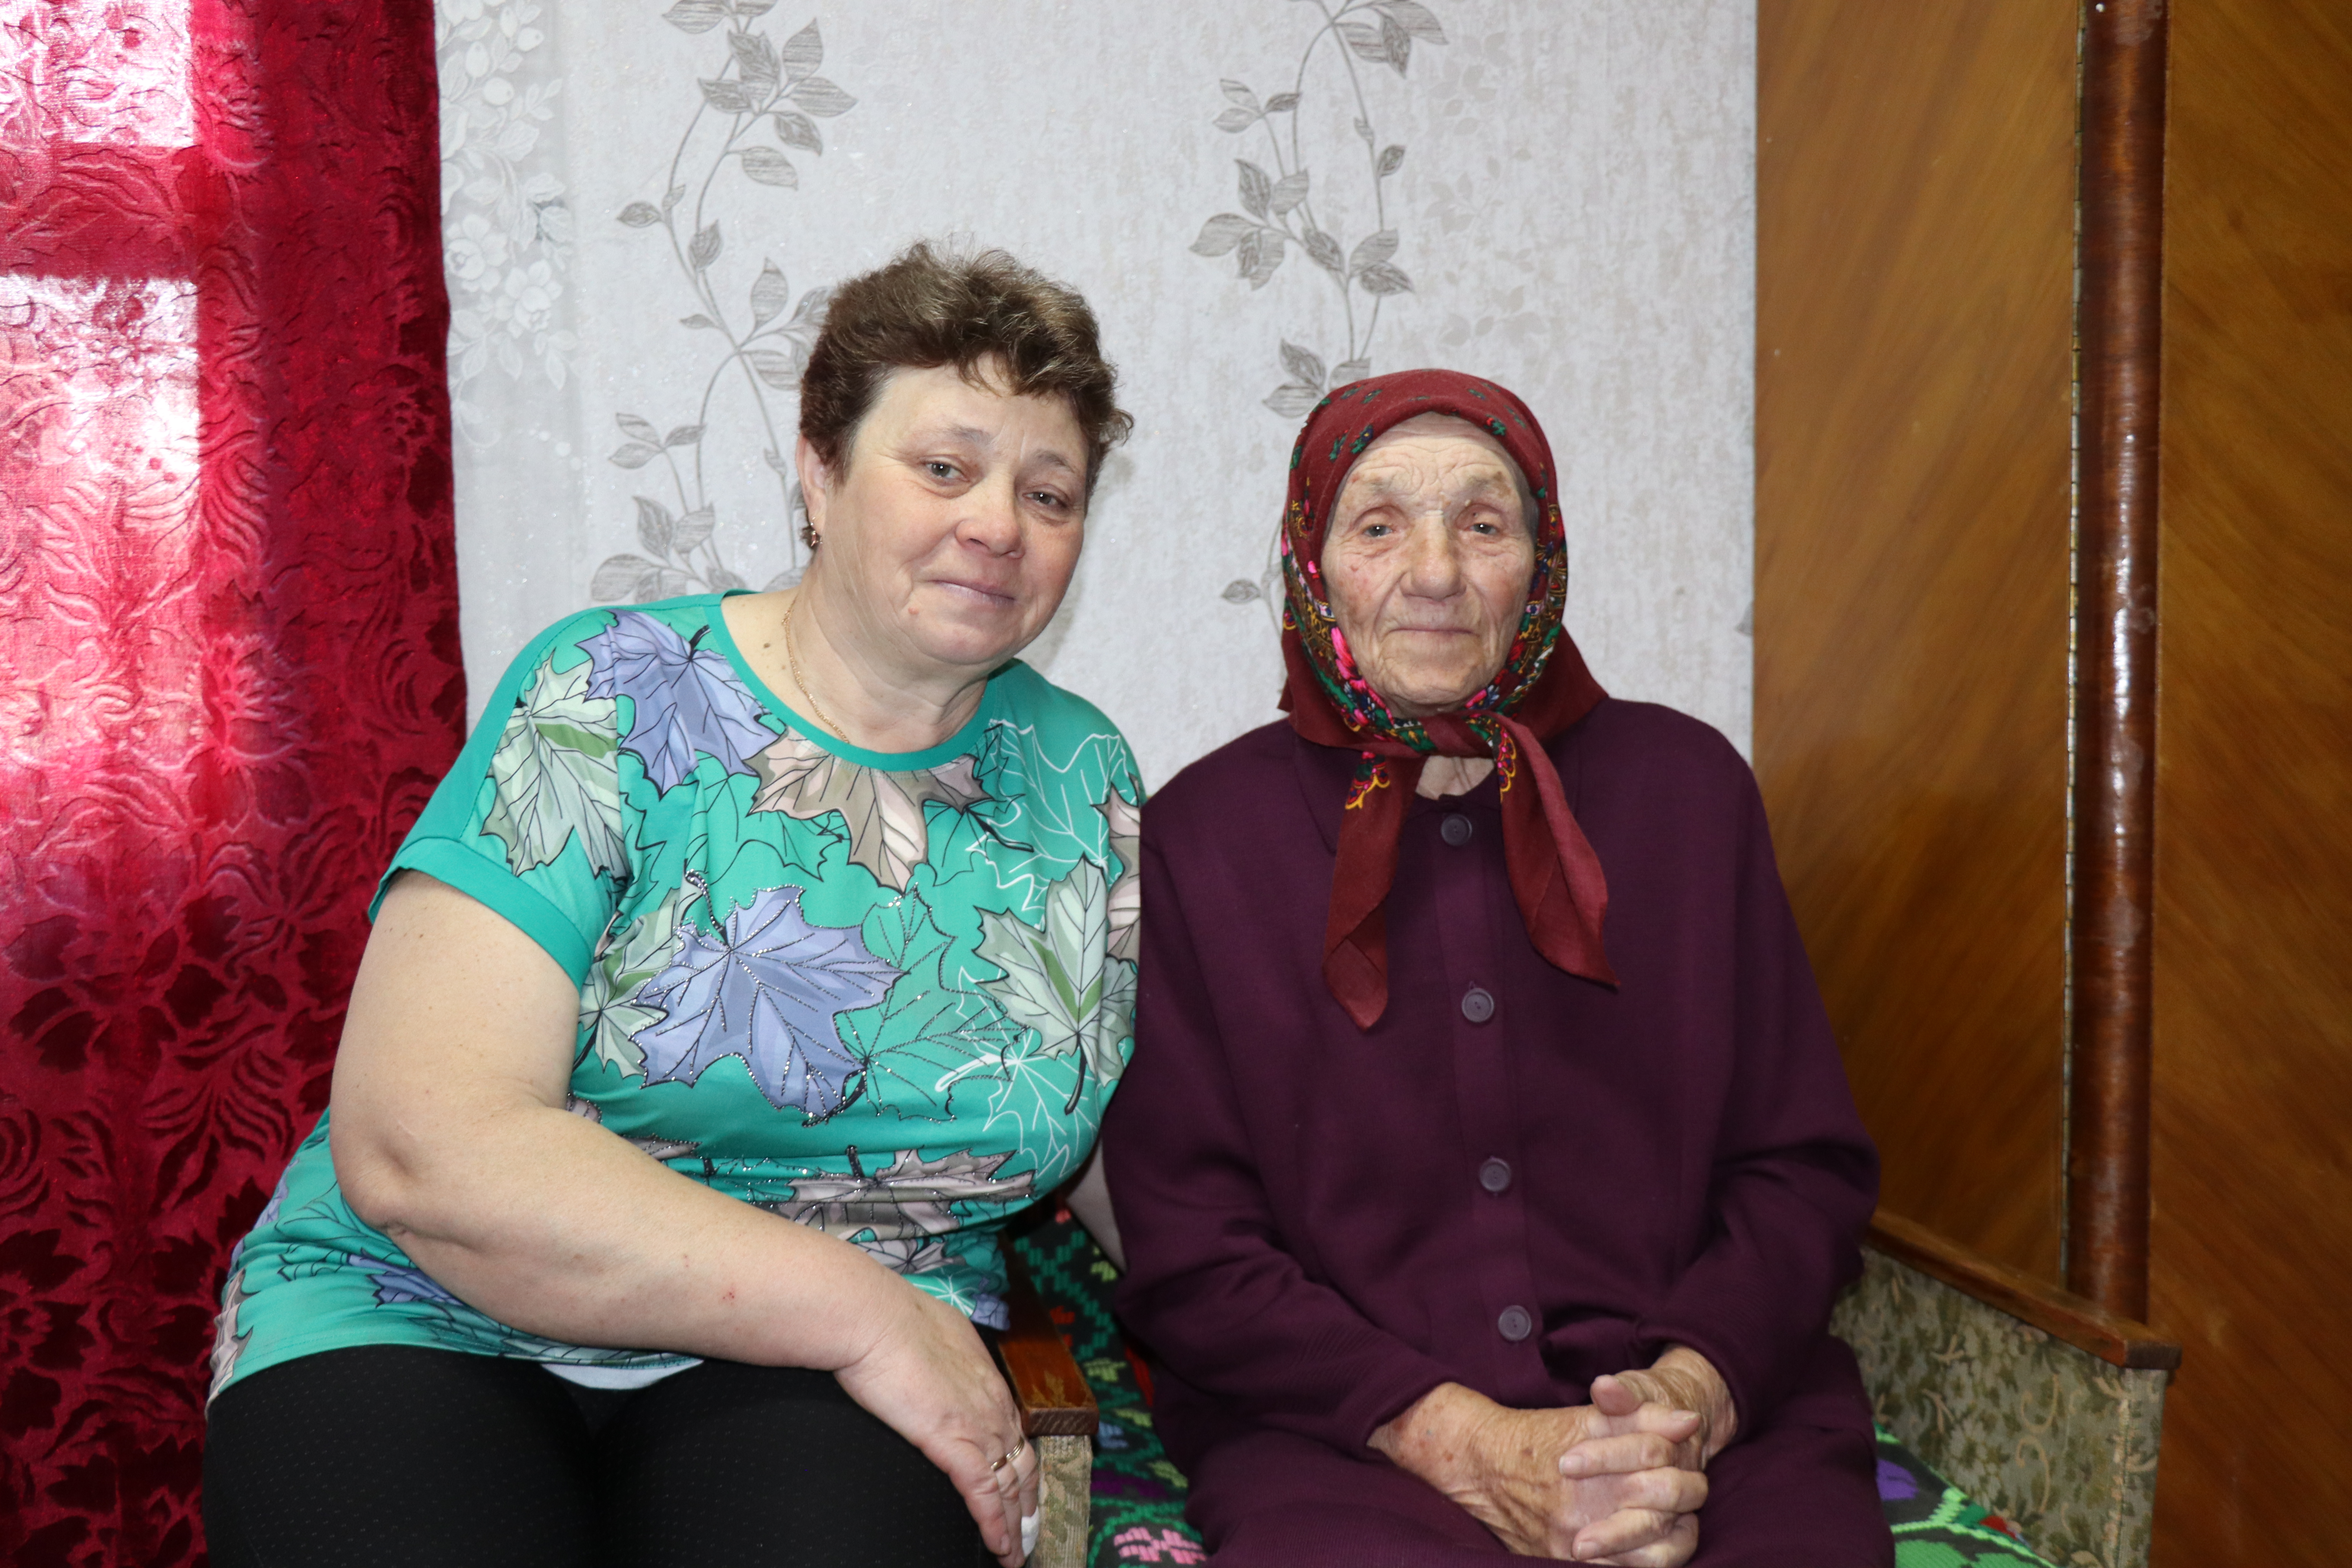 Надежда Павловна Вечорко из агрогородка Жидче, которая 21 апреля отметила свое 95-летие